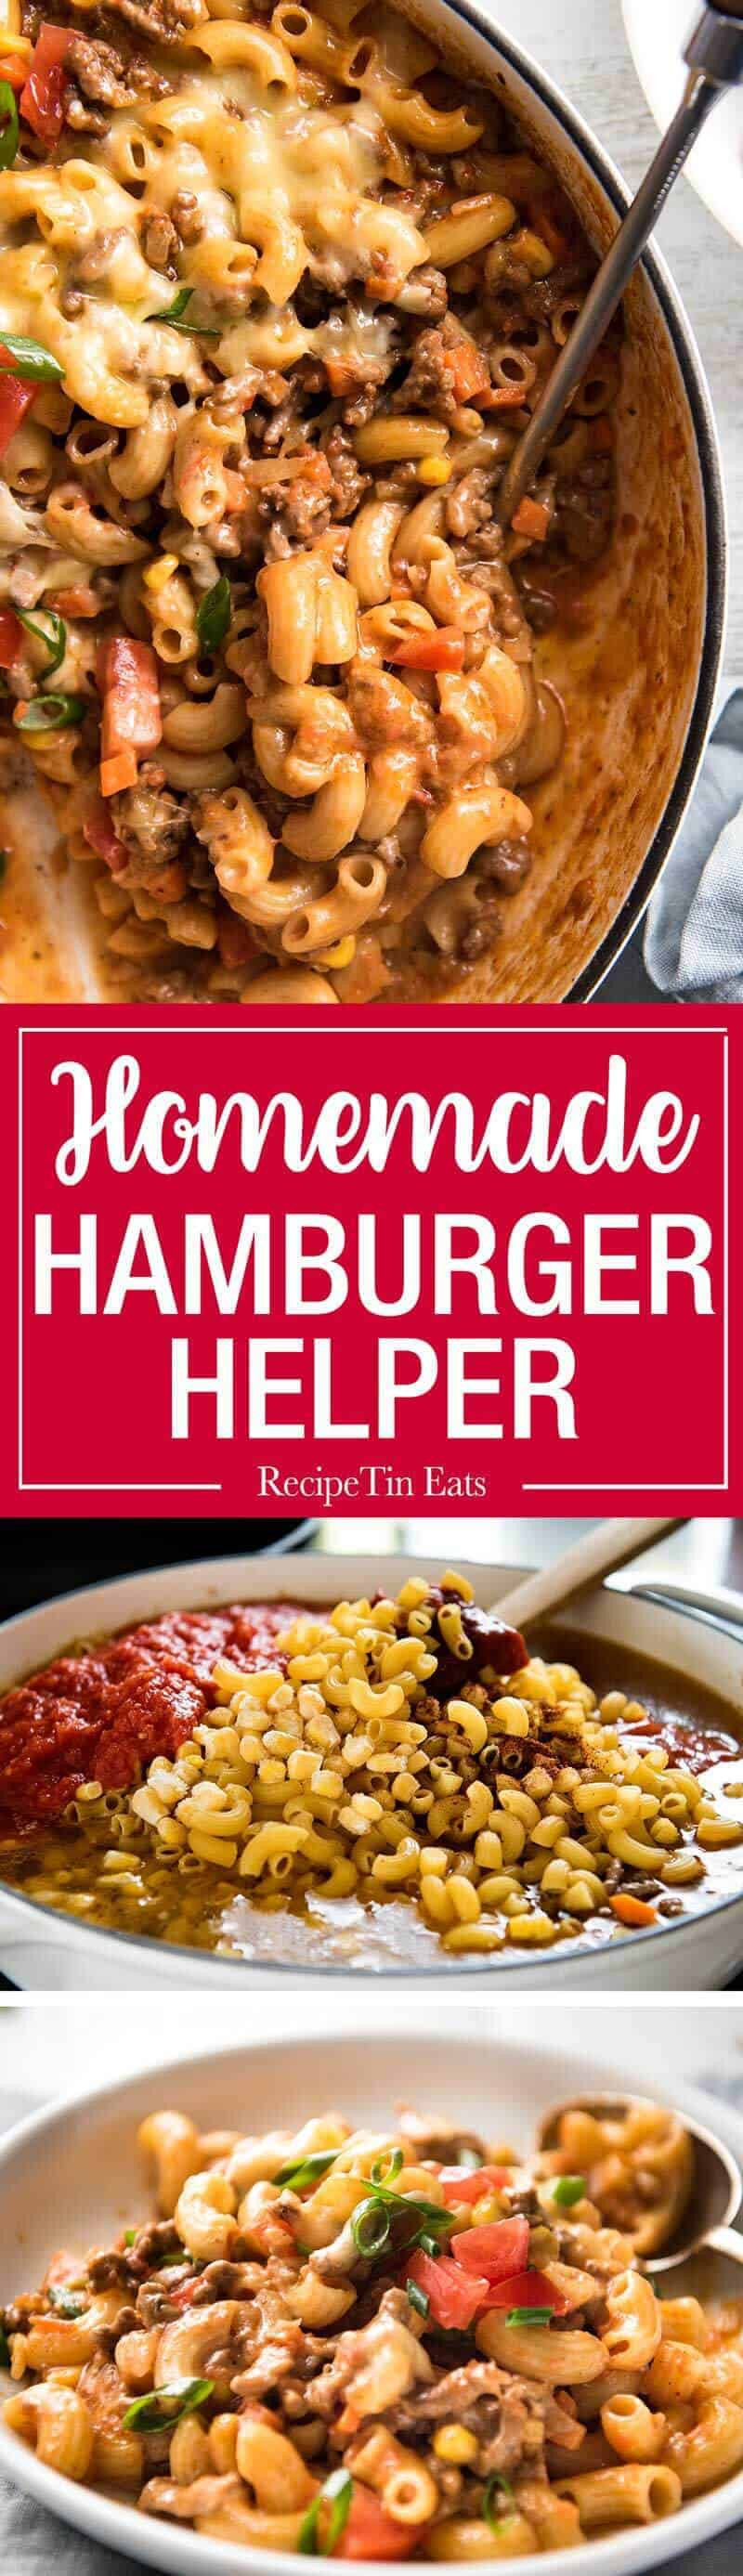 Best ideas about DIY Hamburger Helper
. Save or Pin Cheeseburger Casserole Homemade Hamburger Helper Now.